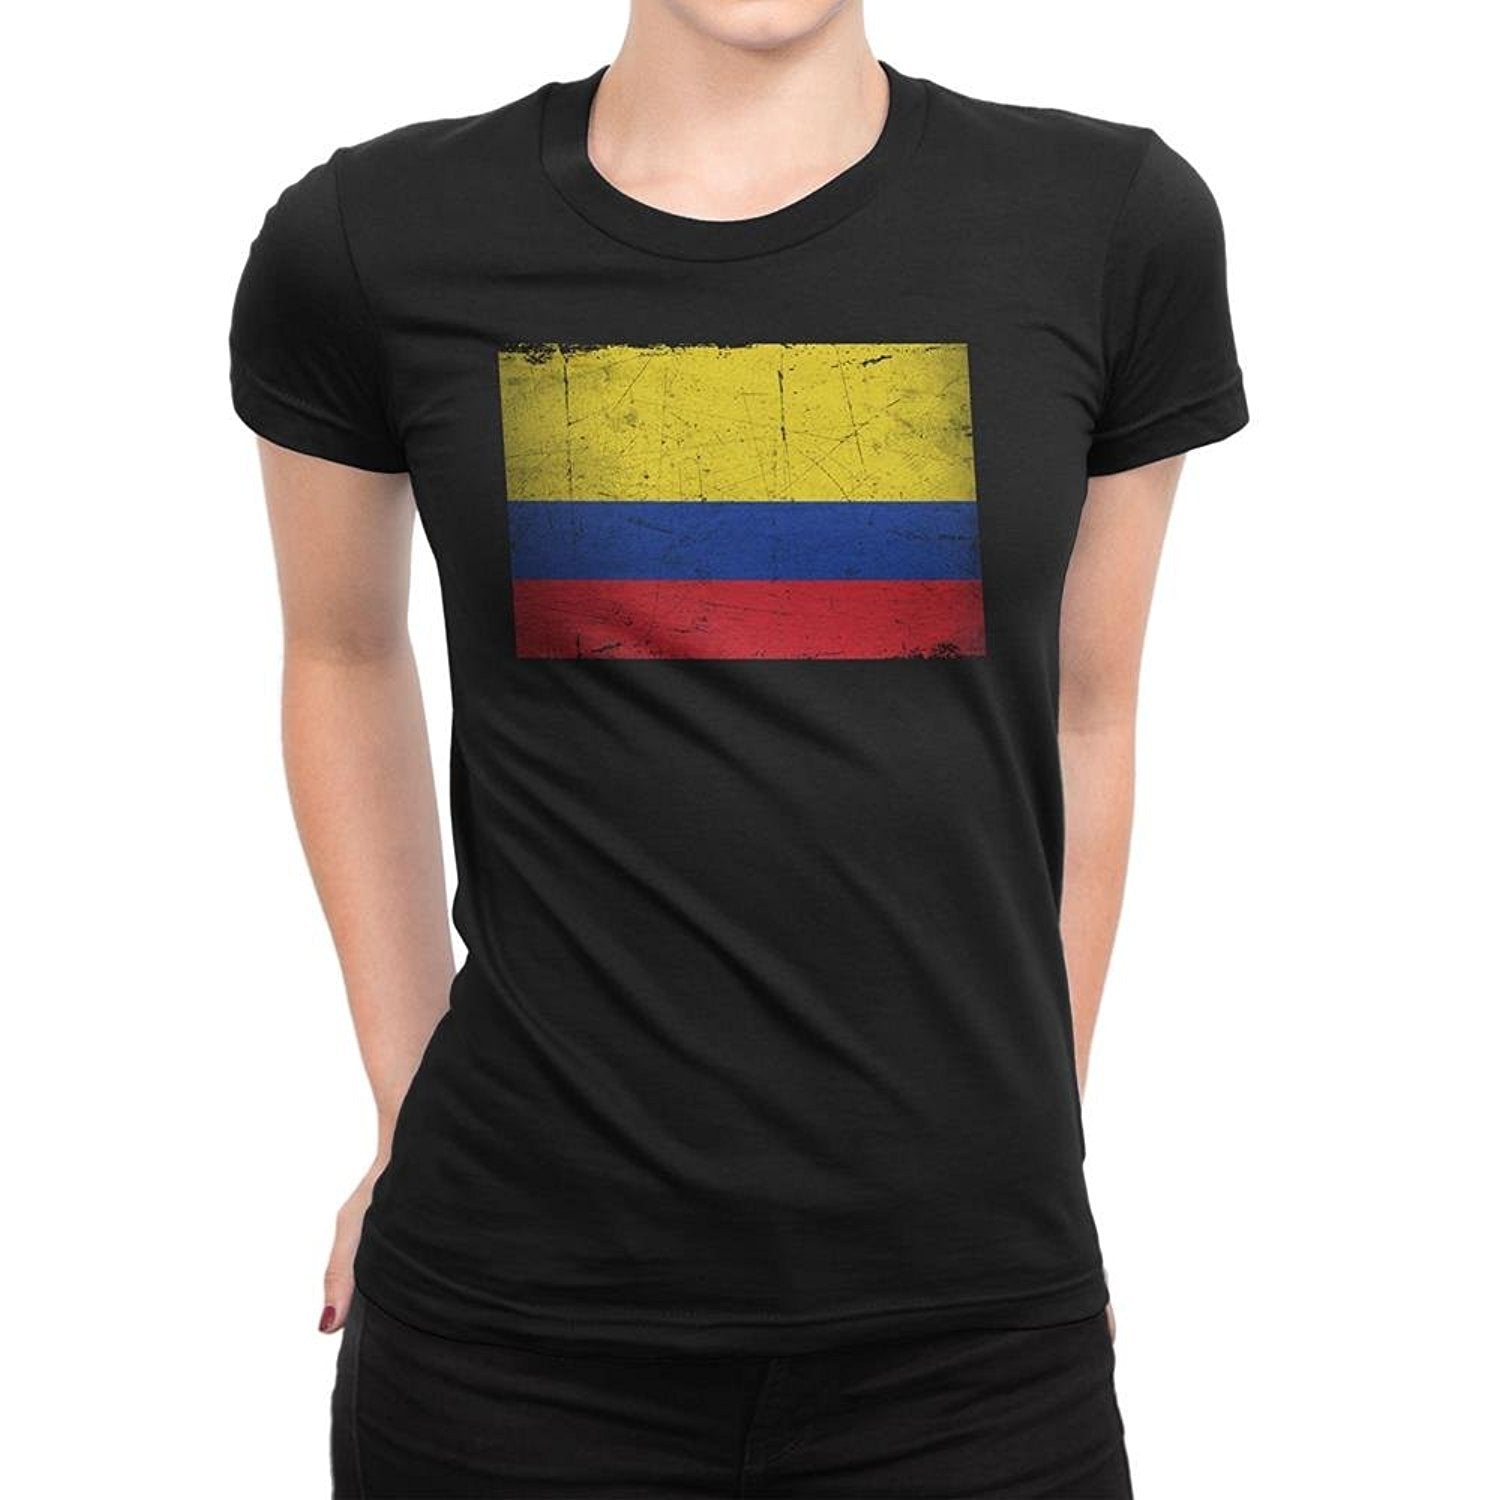 Colombia Flag Tee T-Shirt Ladies Womens Unisex Vintage Retro Shirt